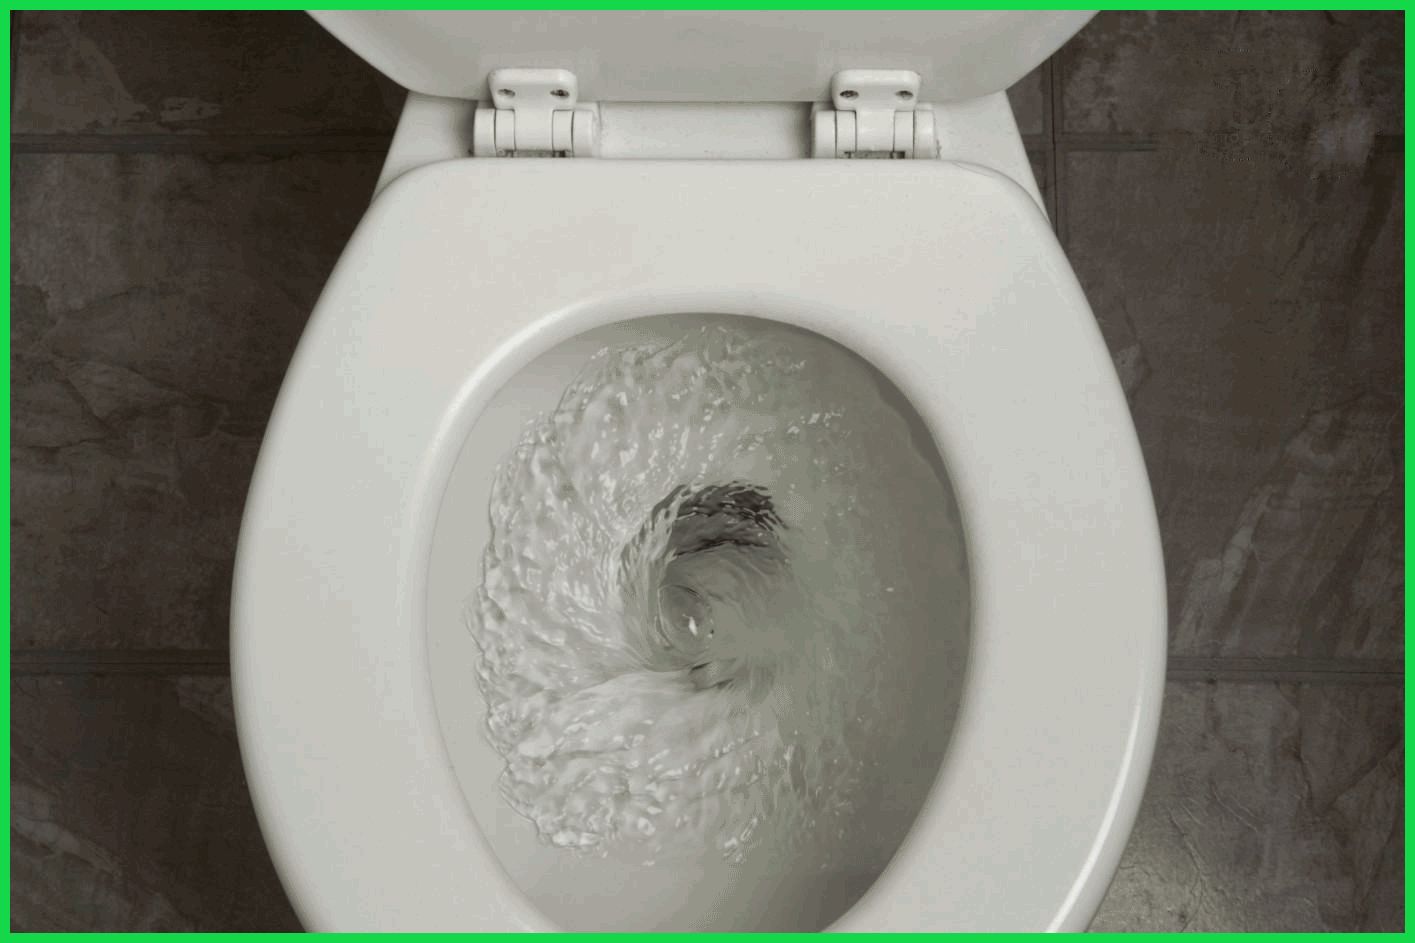 Nhận biết 4 vấn đề về thiết bị phòng tắm thường gặp và cách xử lý hiệu quả